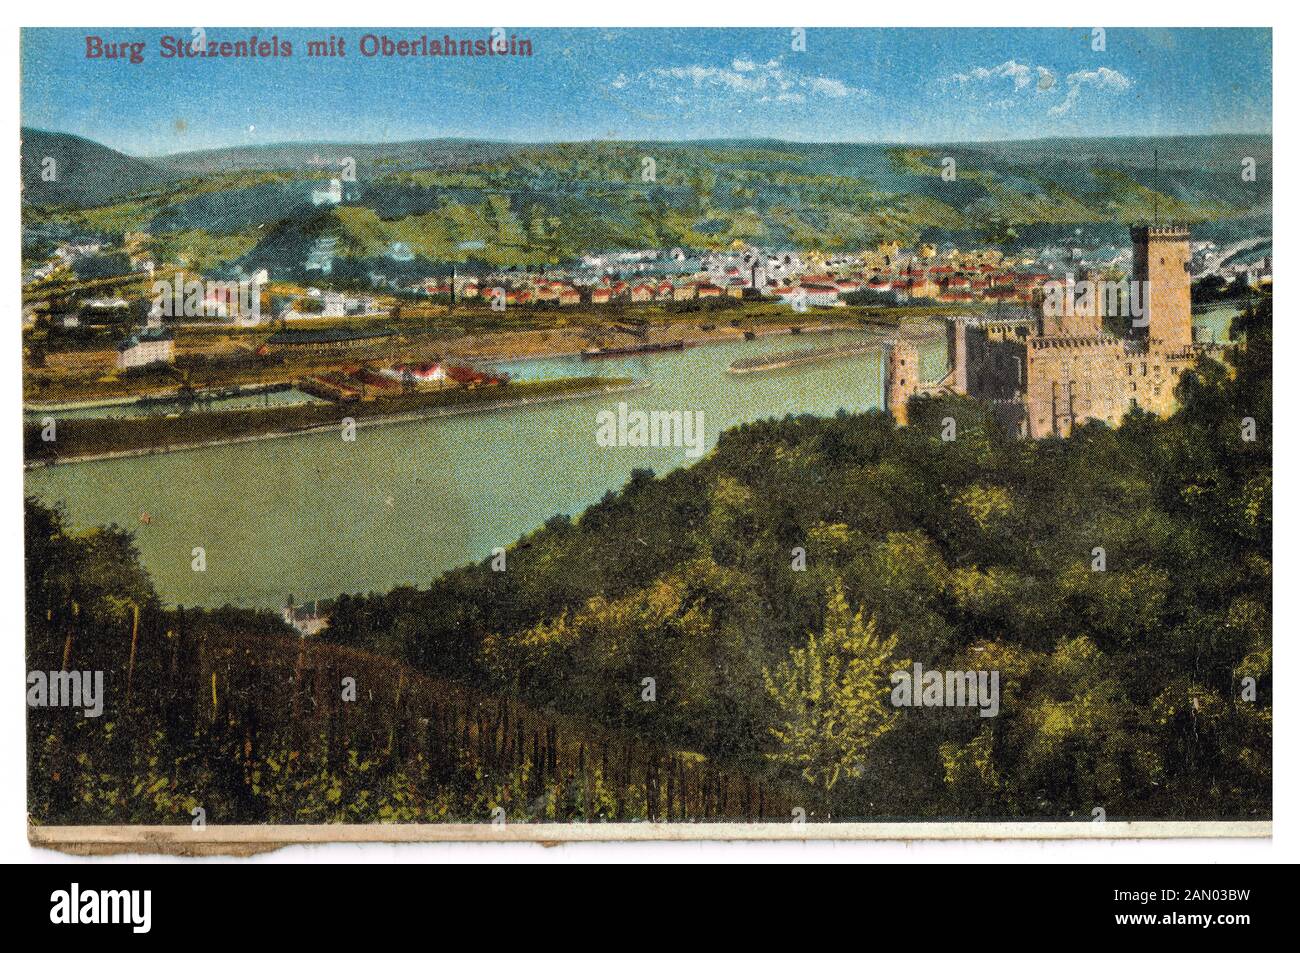 Il castello di Stolzensfels e Oberlahnstein città vecchia cartolina dipinta, Germania Foto Stock